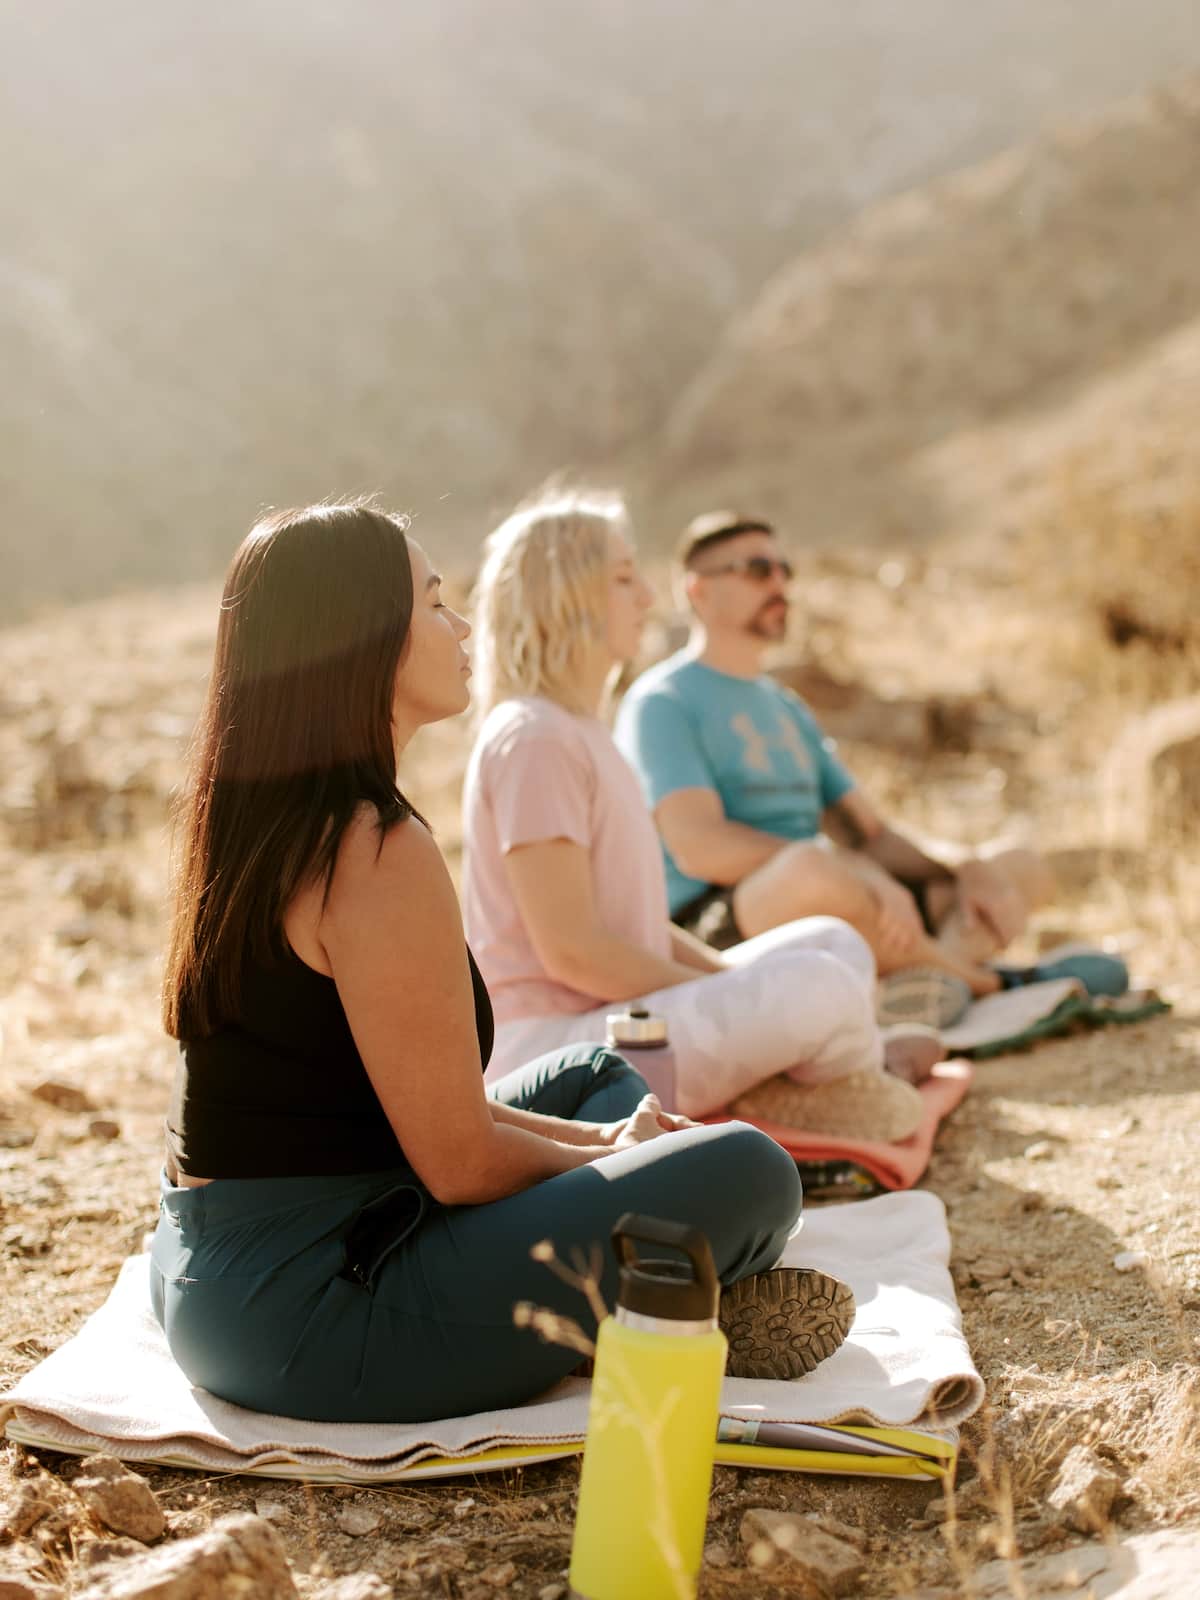 Group yoga in desert